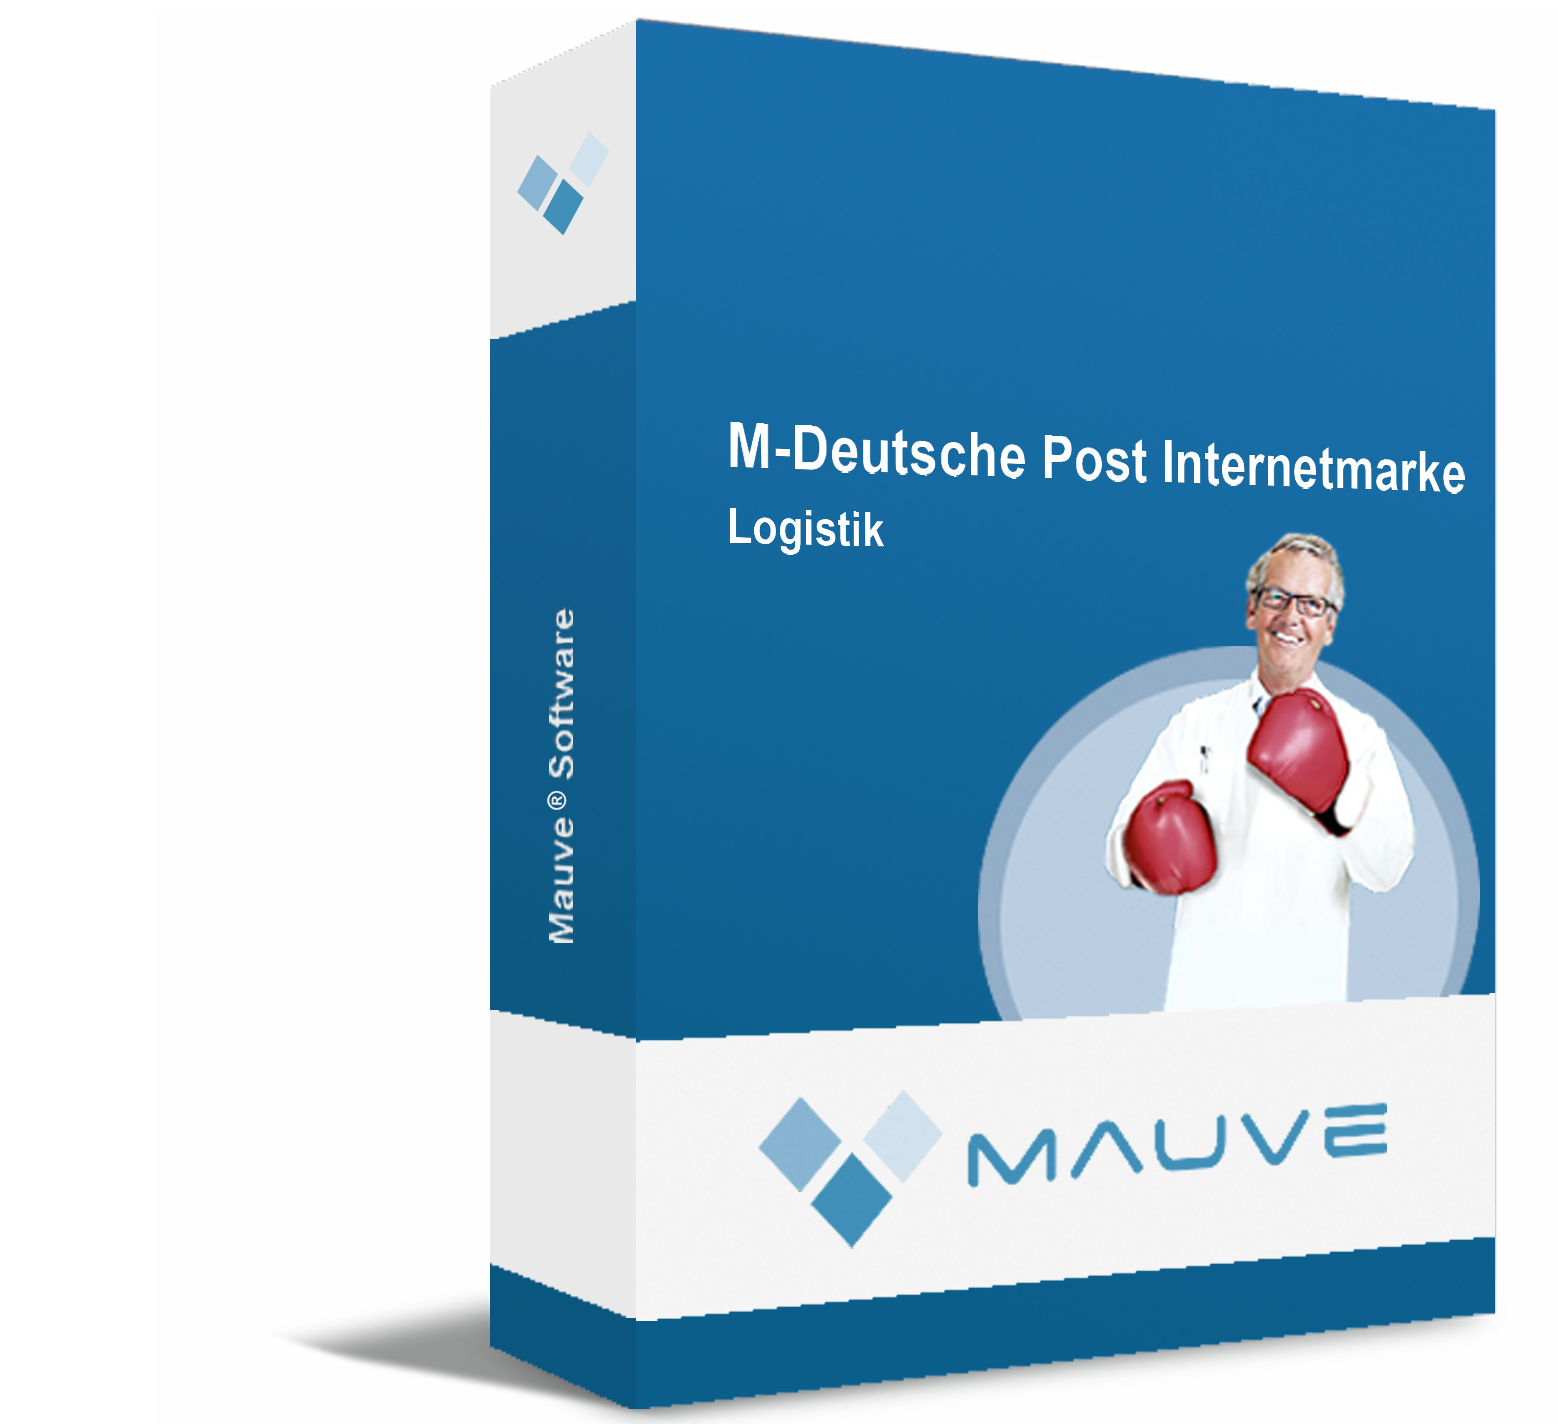 M-Deutsche Post Internetmarke